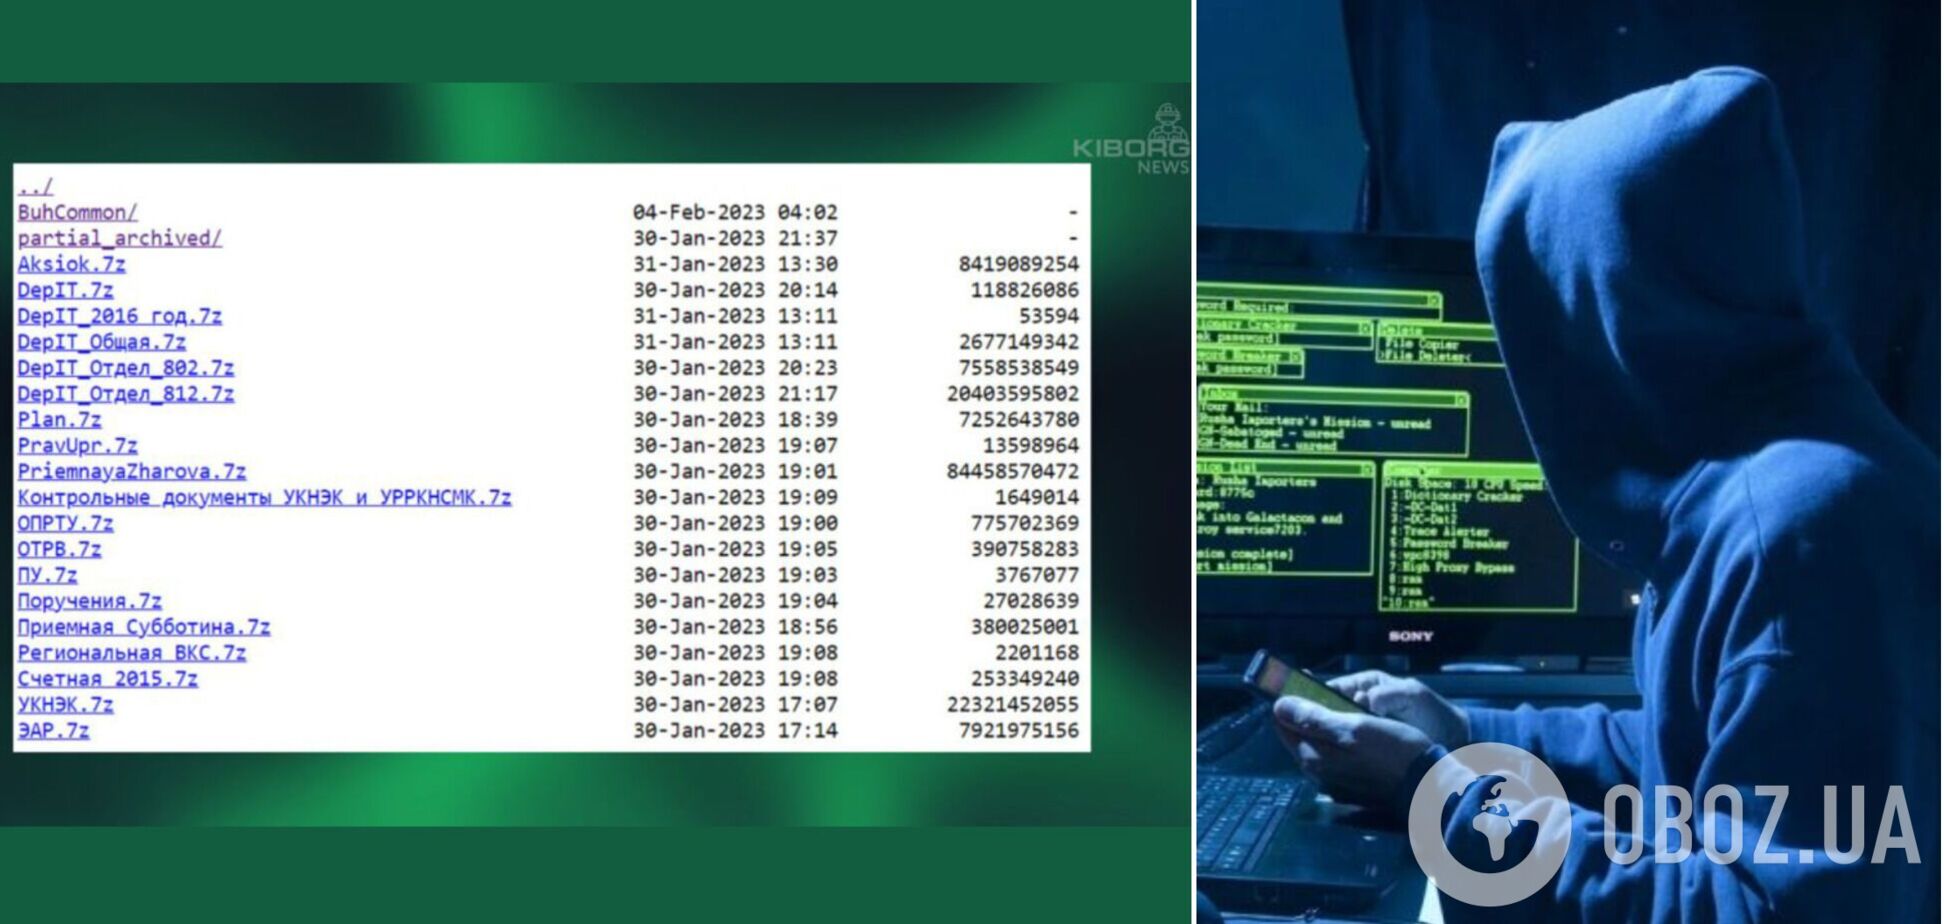 Українські хакери викрали дані у путінських цензорів з 'Роскомнагляду': отримано 500 гб матеріалів